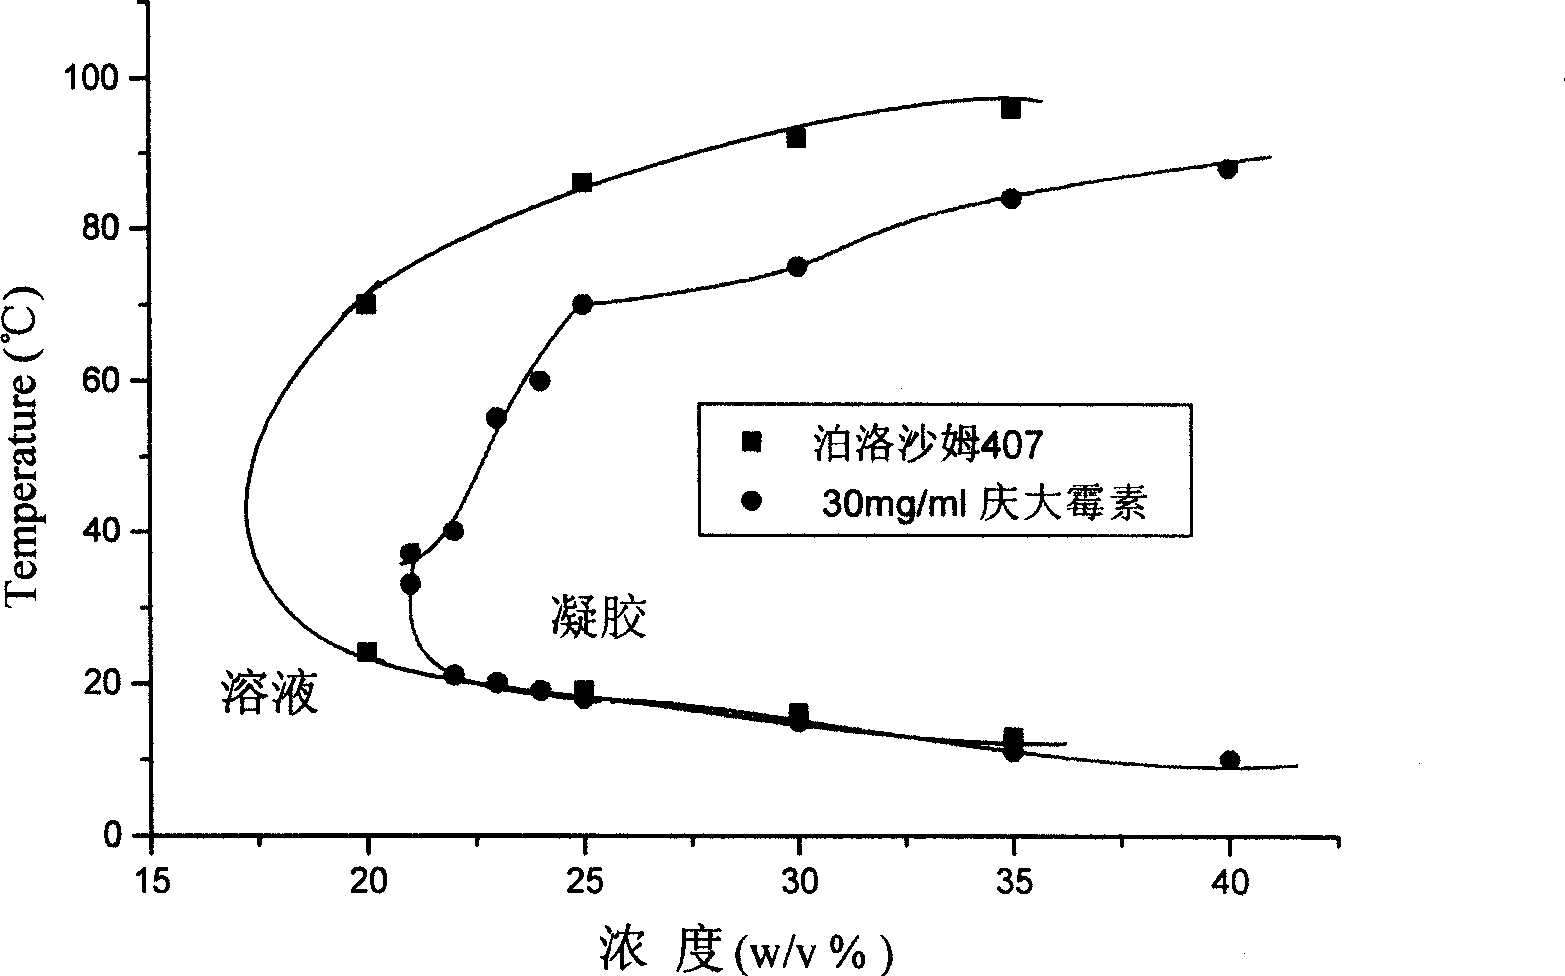 Gentamicin gel rubber preparation